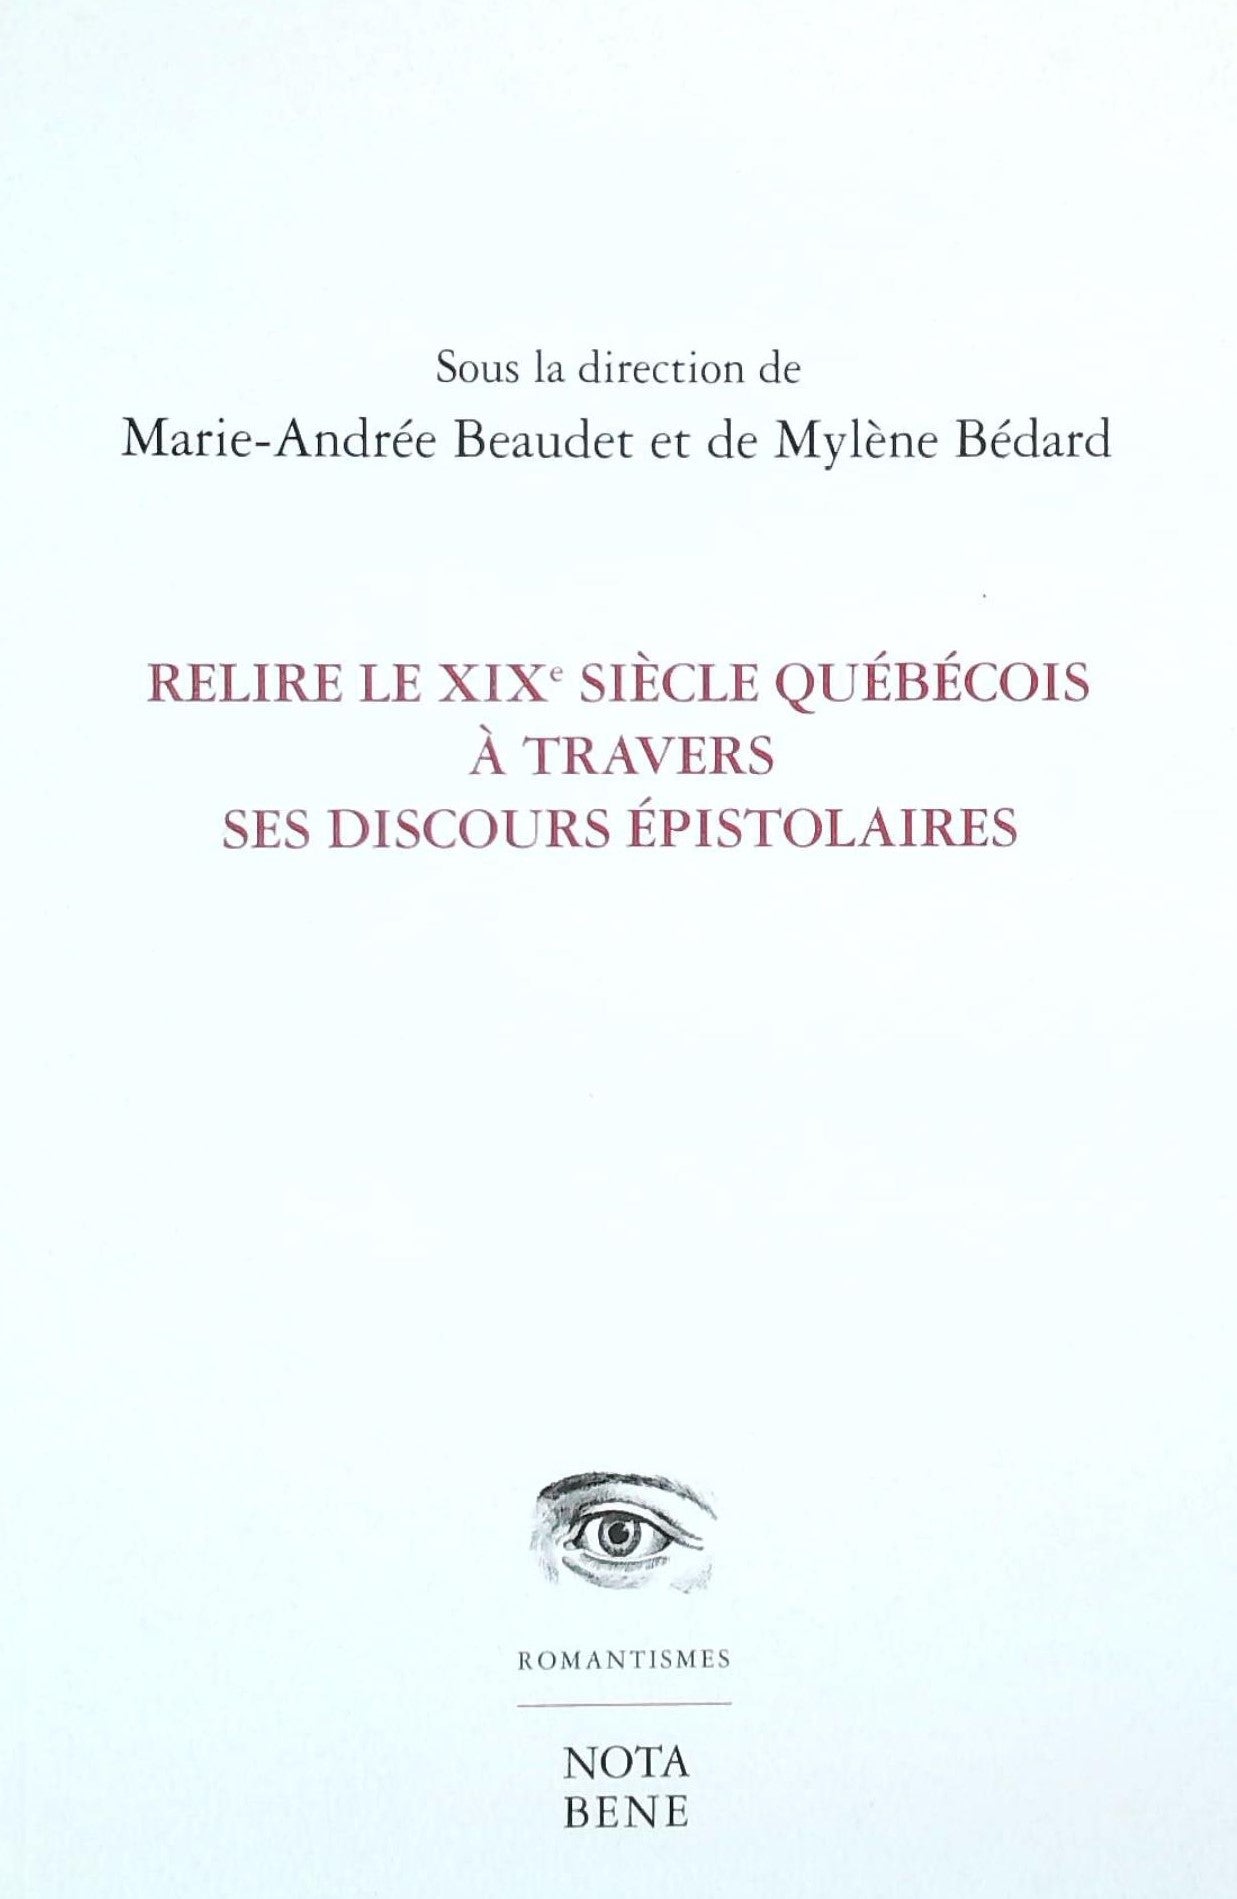 Livre ISBN 2895185336 Relire le XIXe siècle québécois à travers ses discourts épistolaires (Marie-Andrée Beaudet)